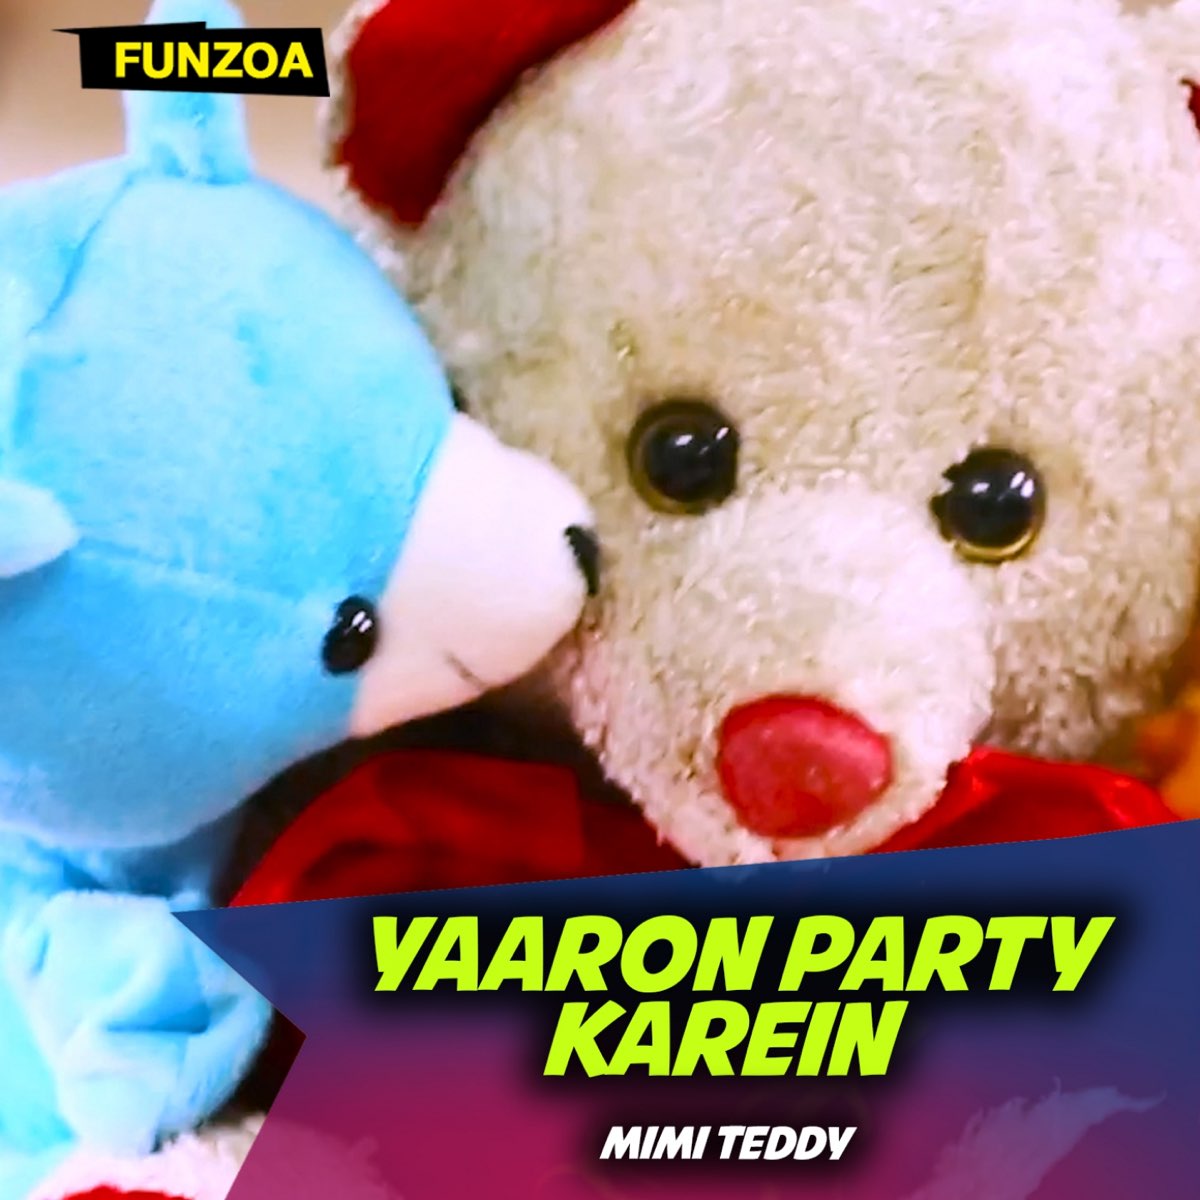 Yaaron Party Karein - Single by Mimi Teddy on Apple Music